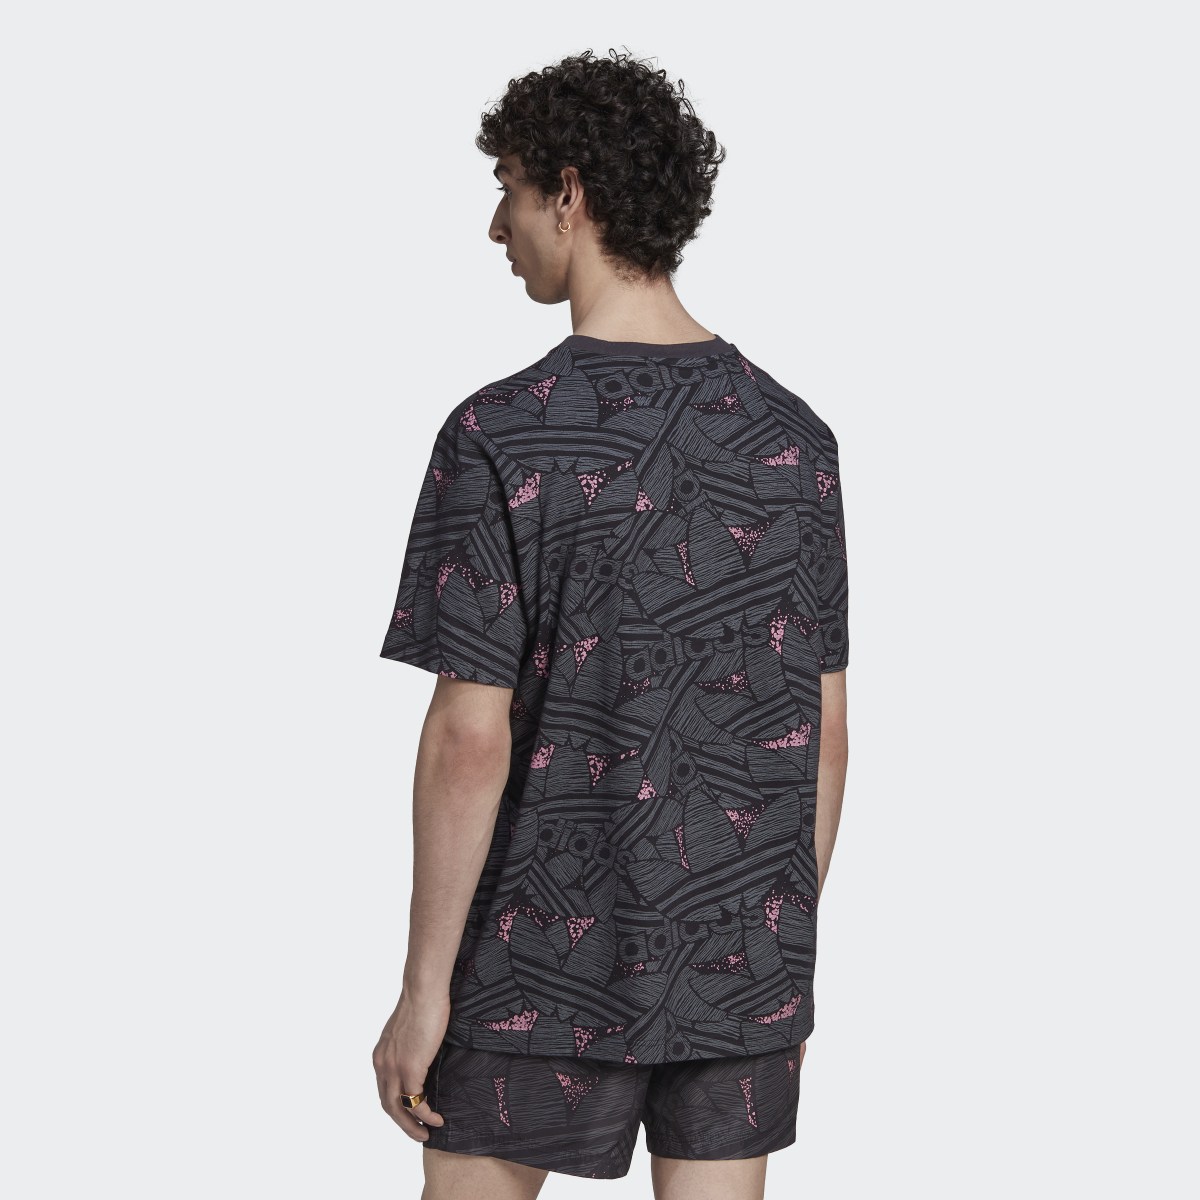 Adidas Rekive Trefoil Allover Print T-Shirt. 4